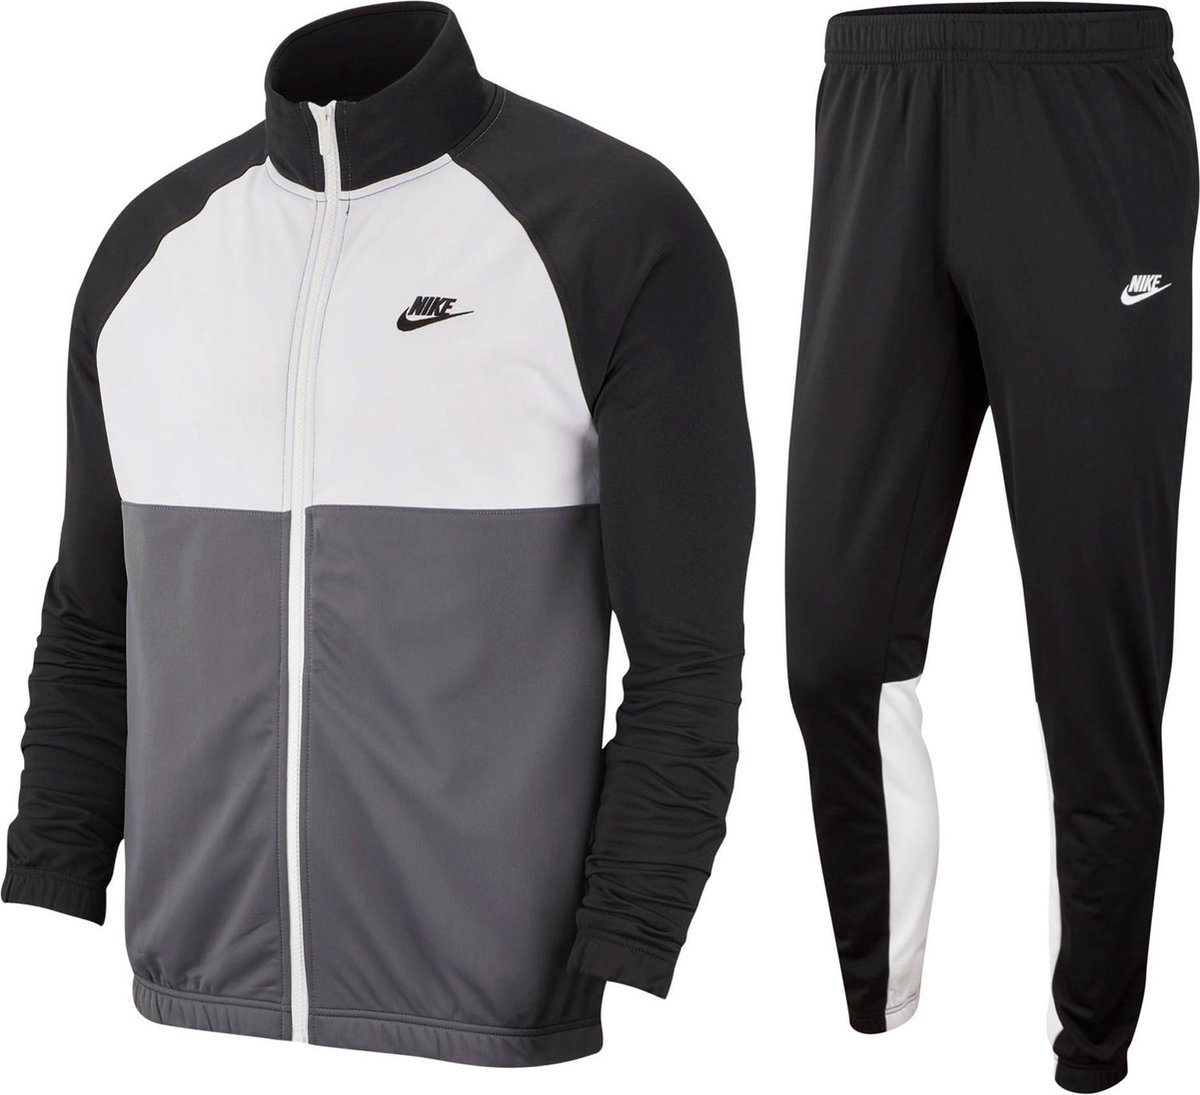 Nike Trainingspak - Maat S - Mannen zwart/wit/grijs | bol.com